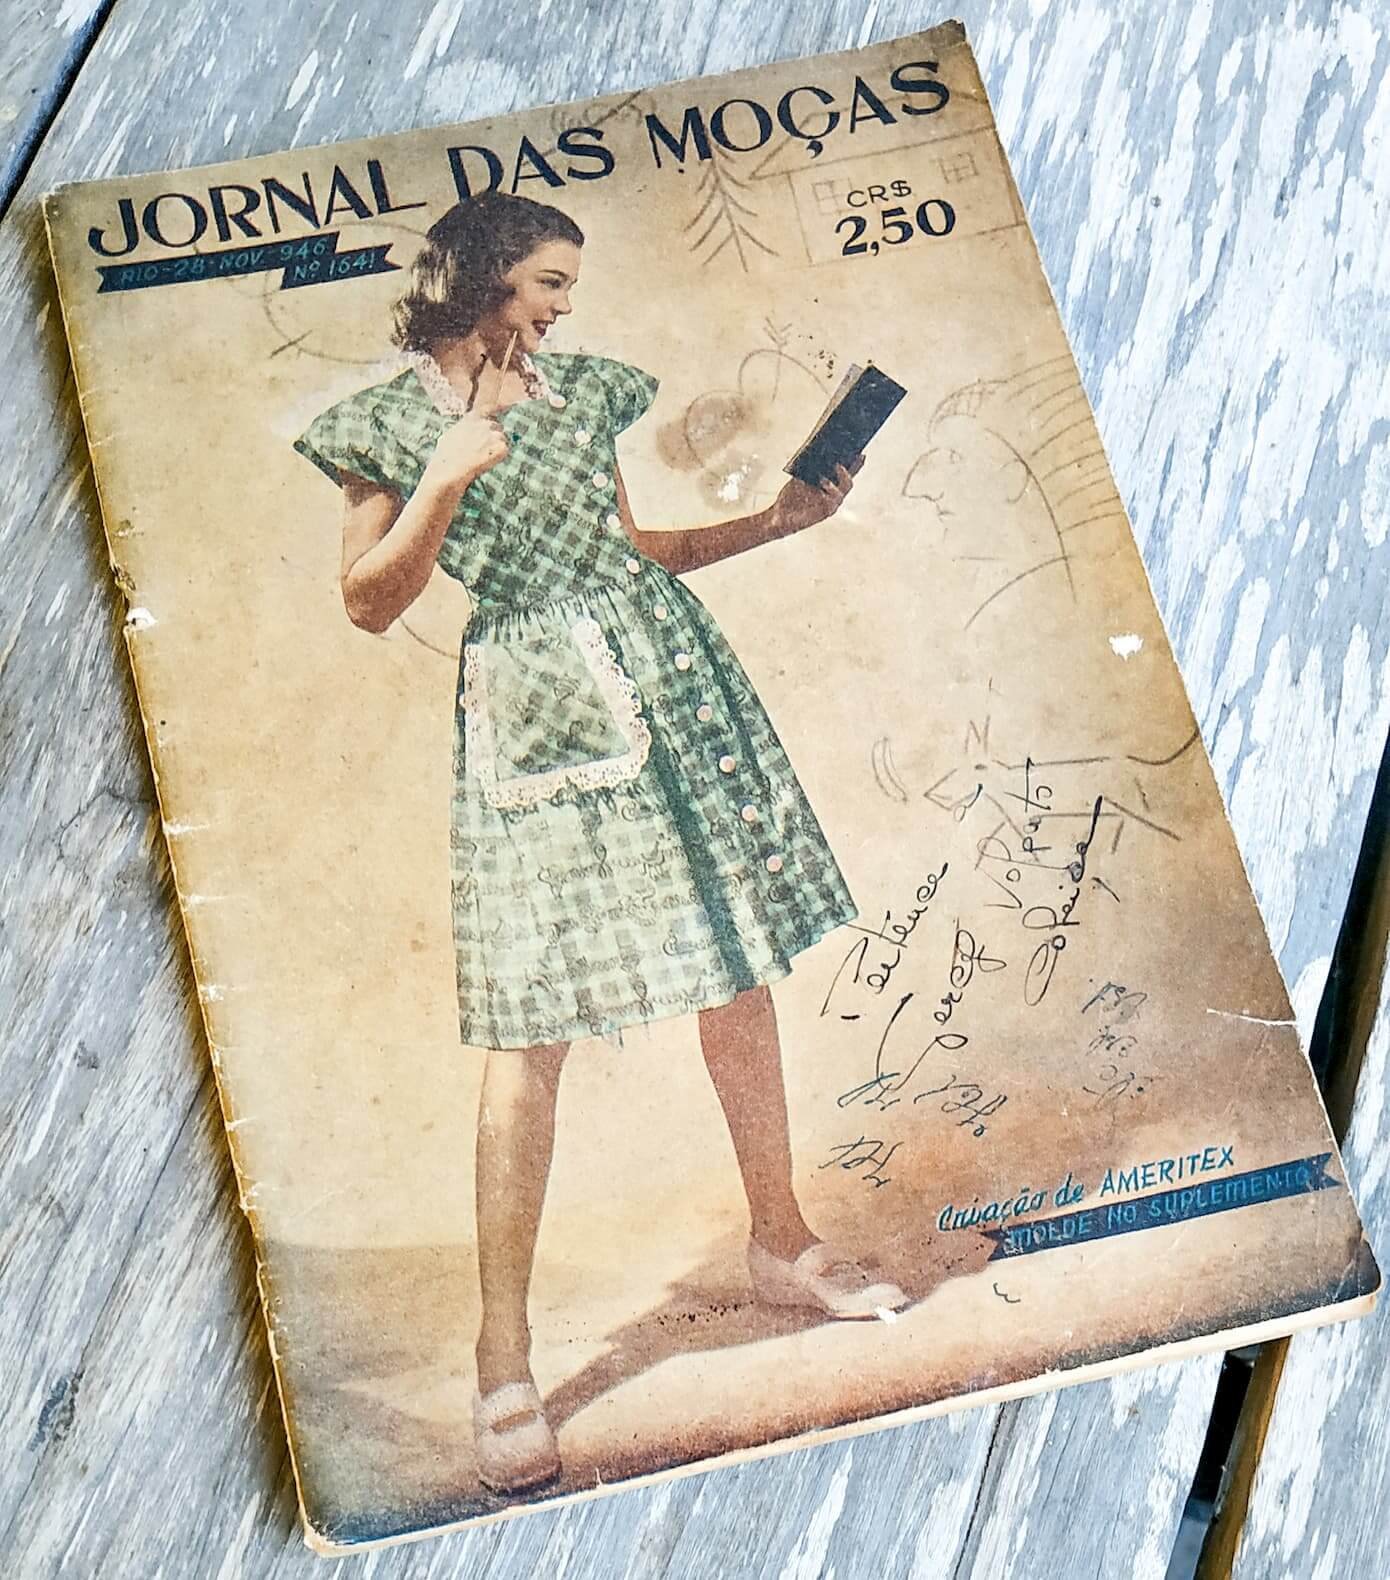 A imagem mostra a capa e uma matéria do Jornal das Moças, a revista mais antiga do acervo de Gercy Volpato, datada de 28 de novembro de 1946.